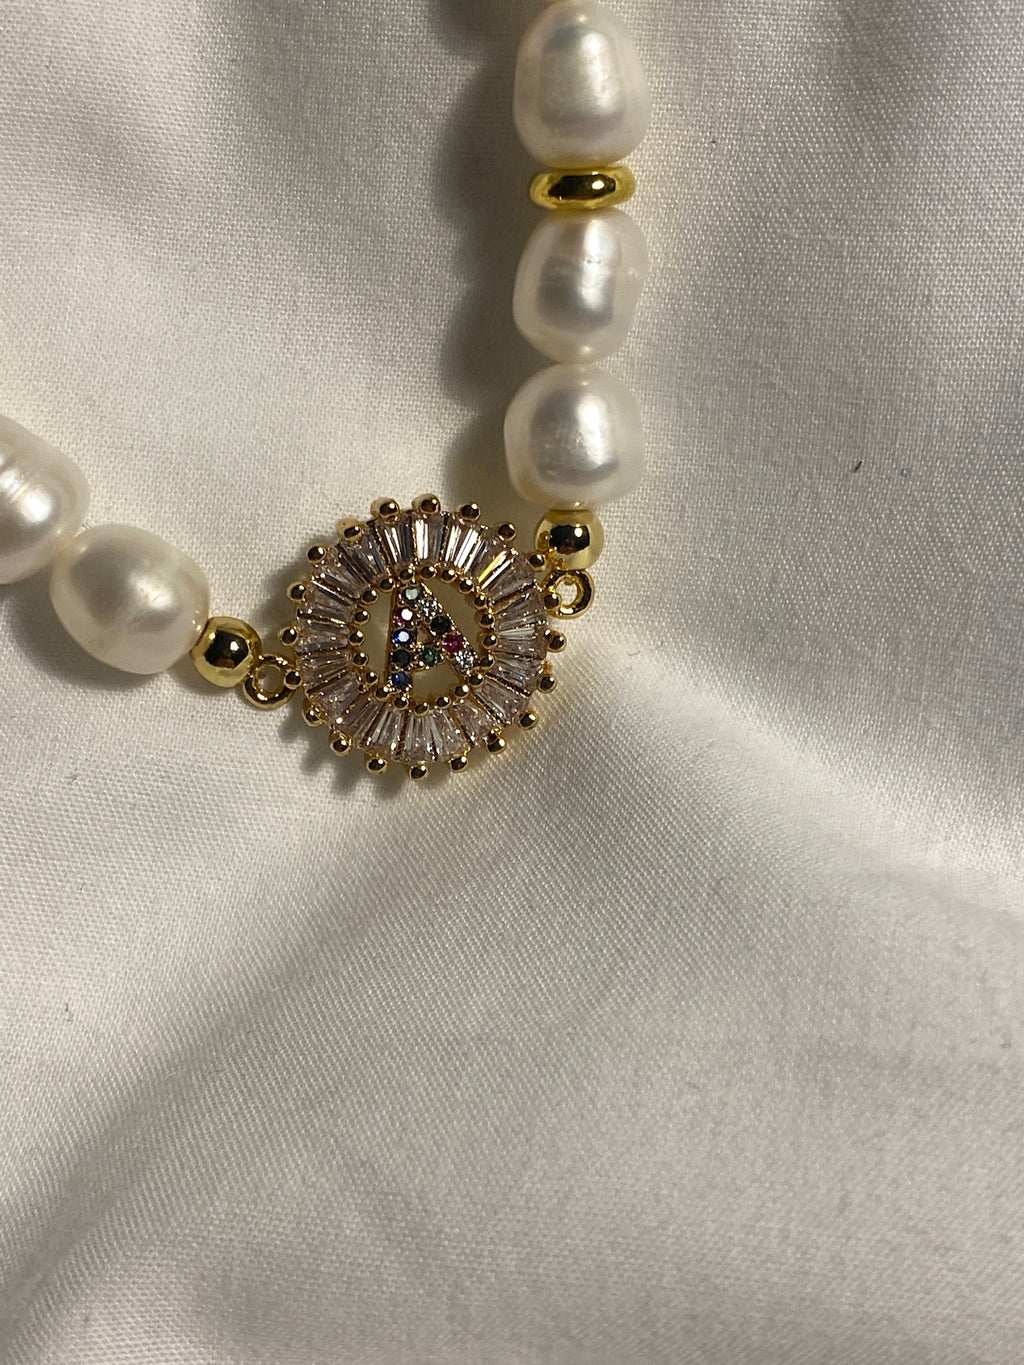 Mykonos Pearl Initial Bracelet - A